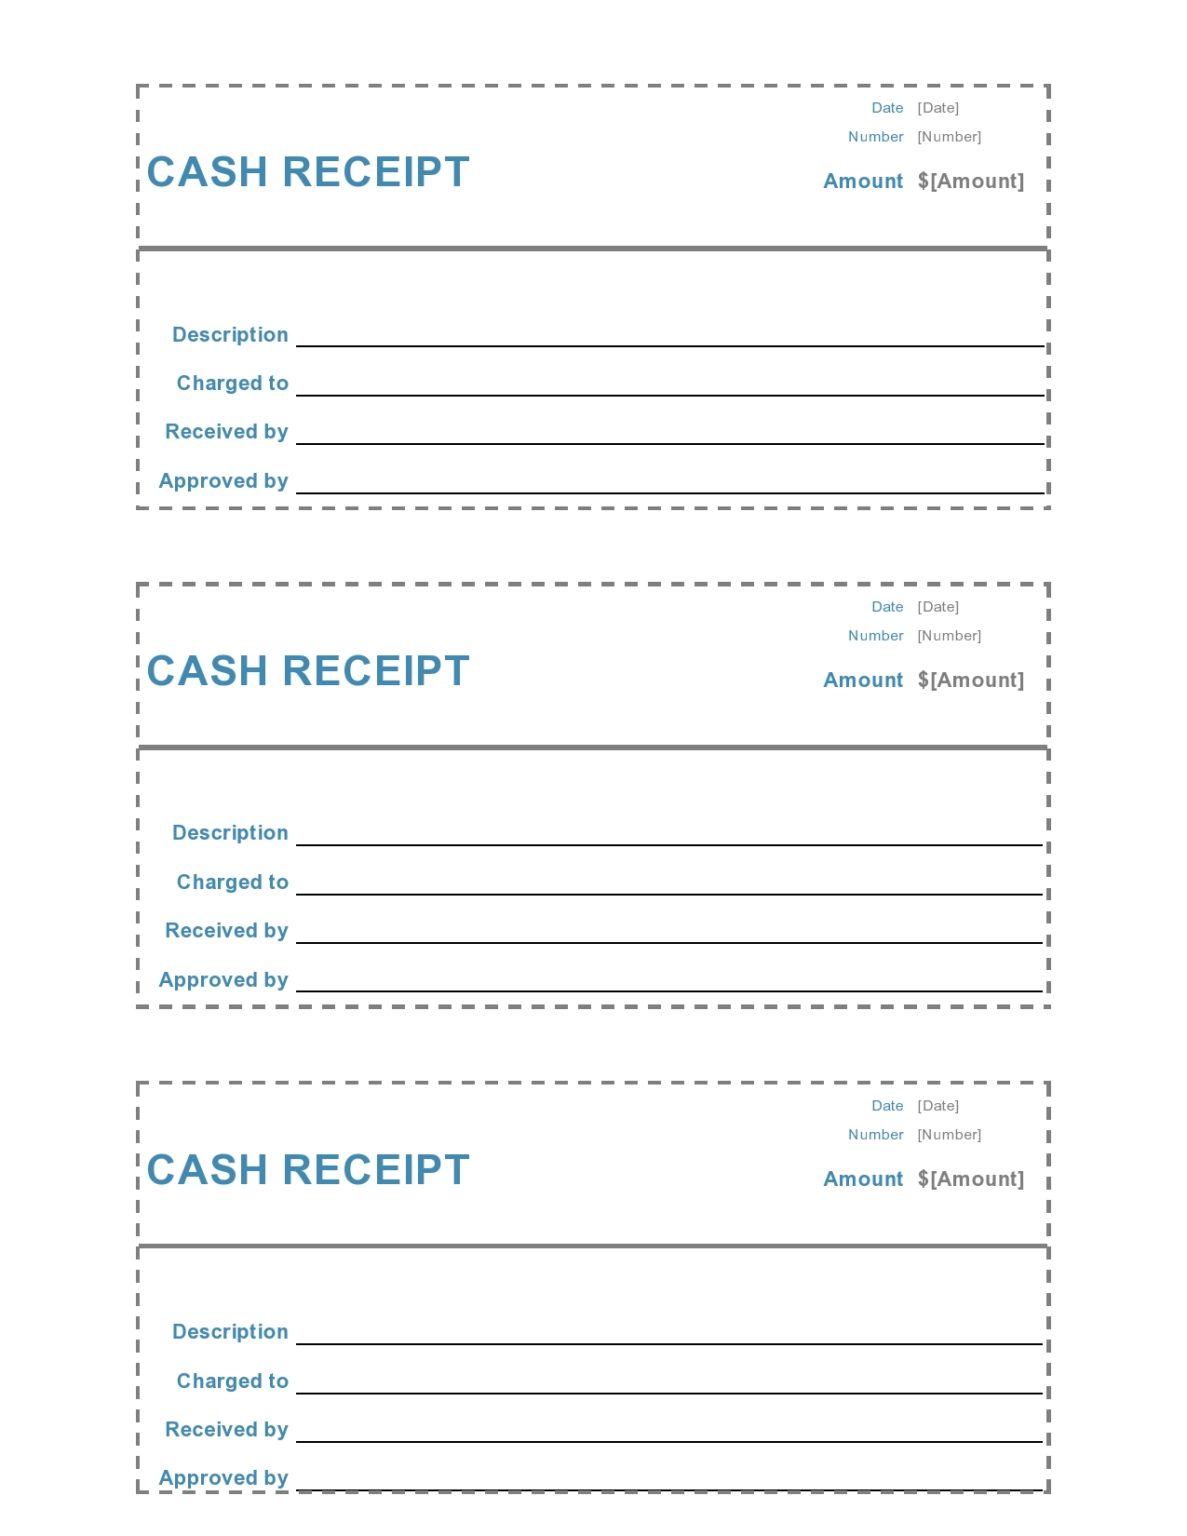 29 Fillable Cash Receipt Templates [& Forms] - TemplateArchive